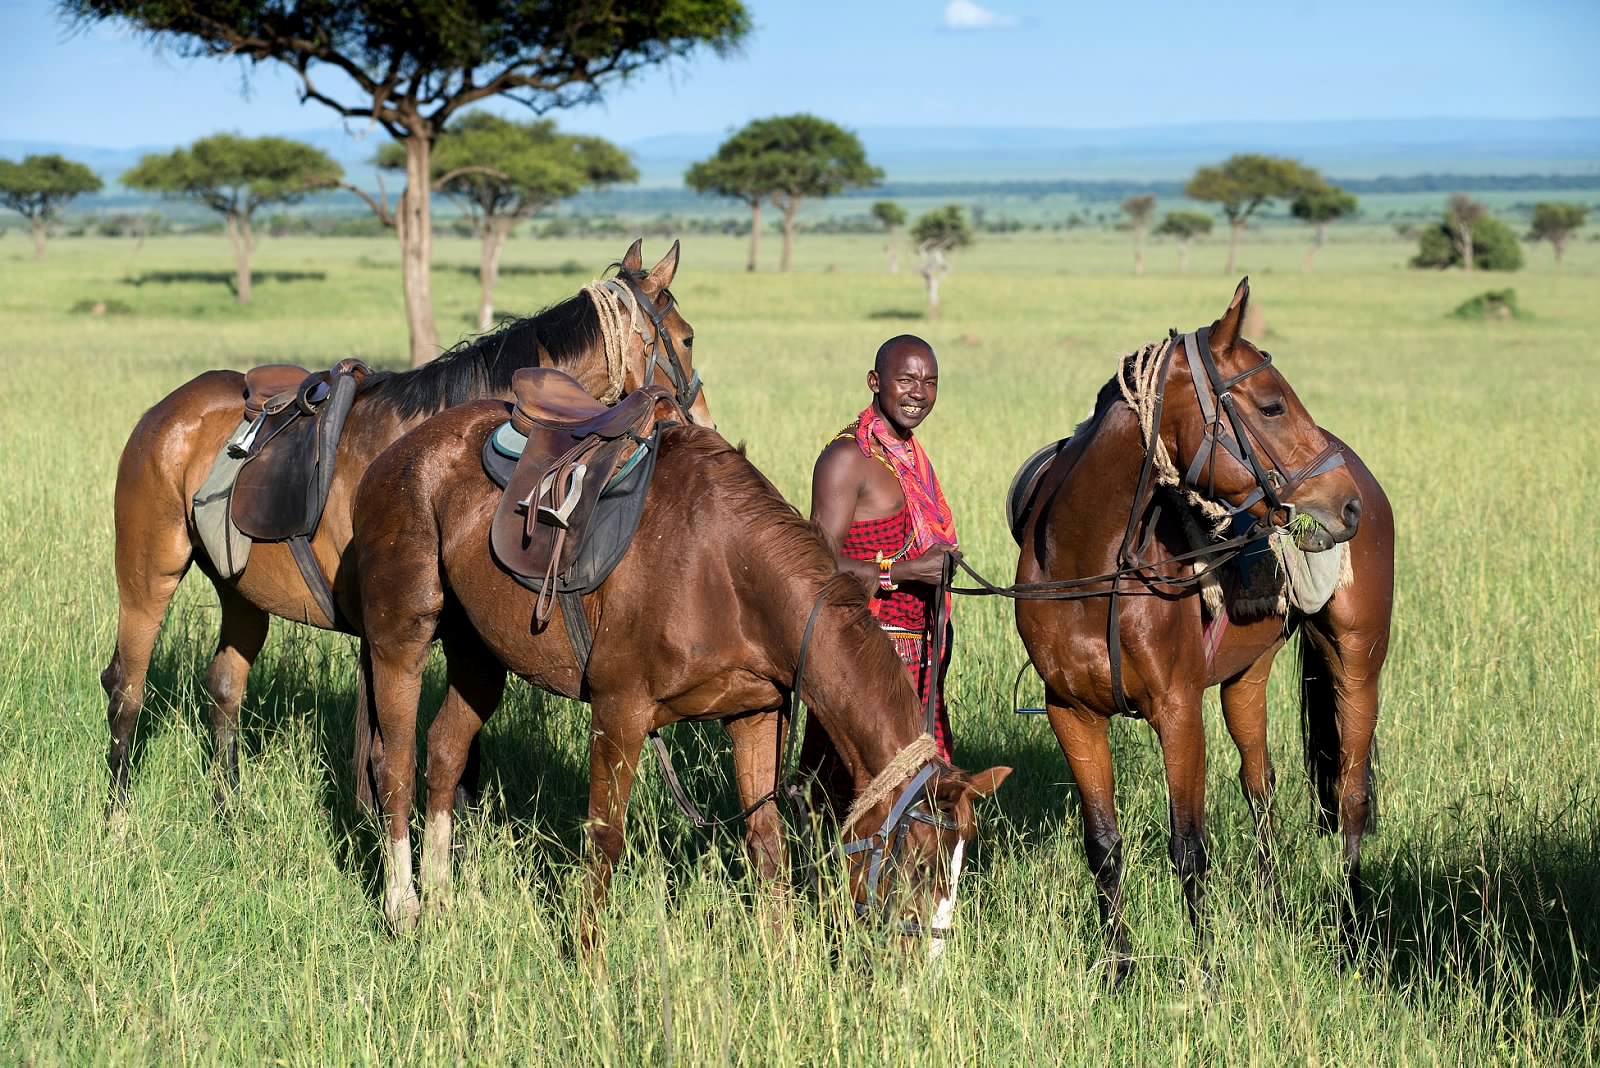 horse riding safari in kenya